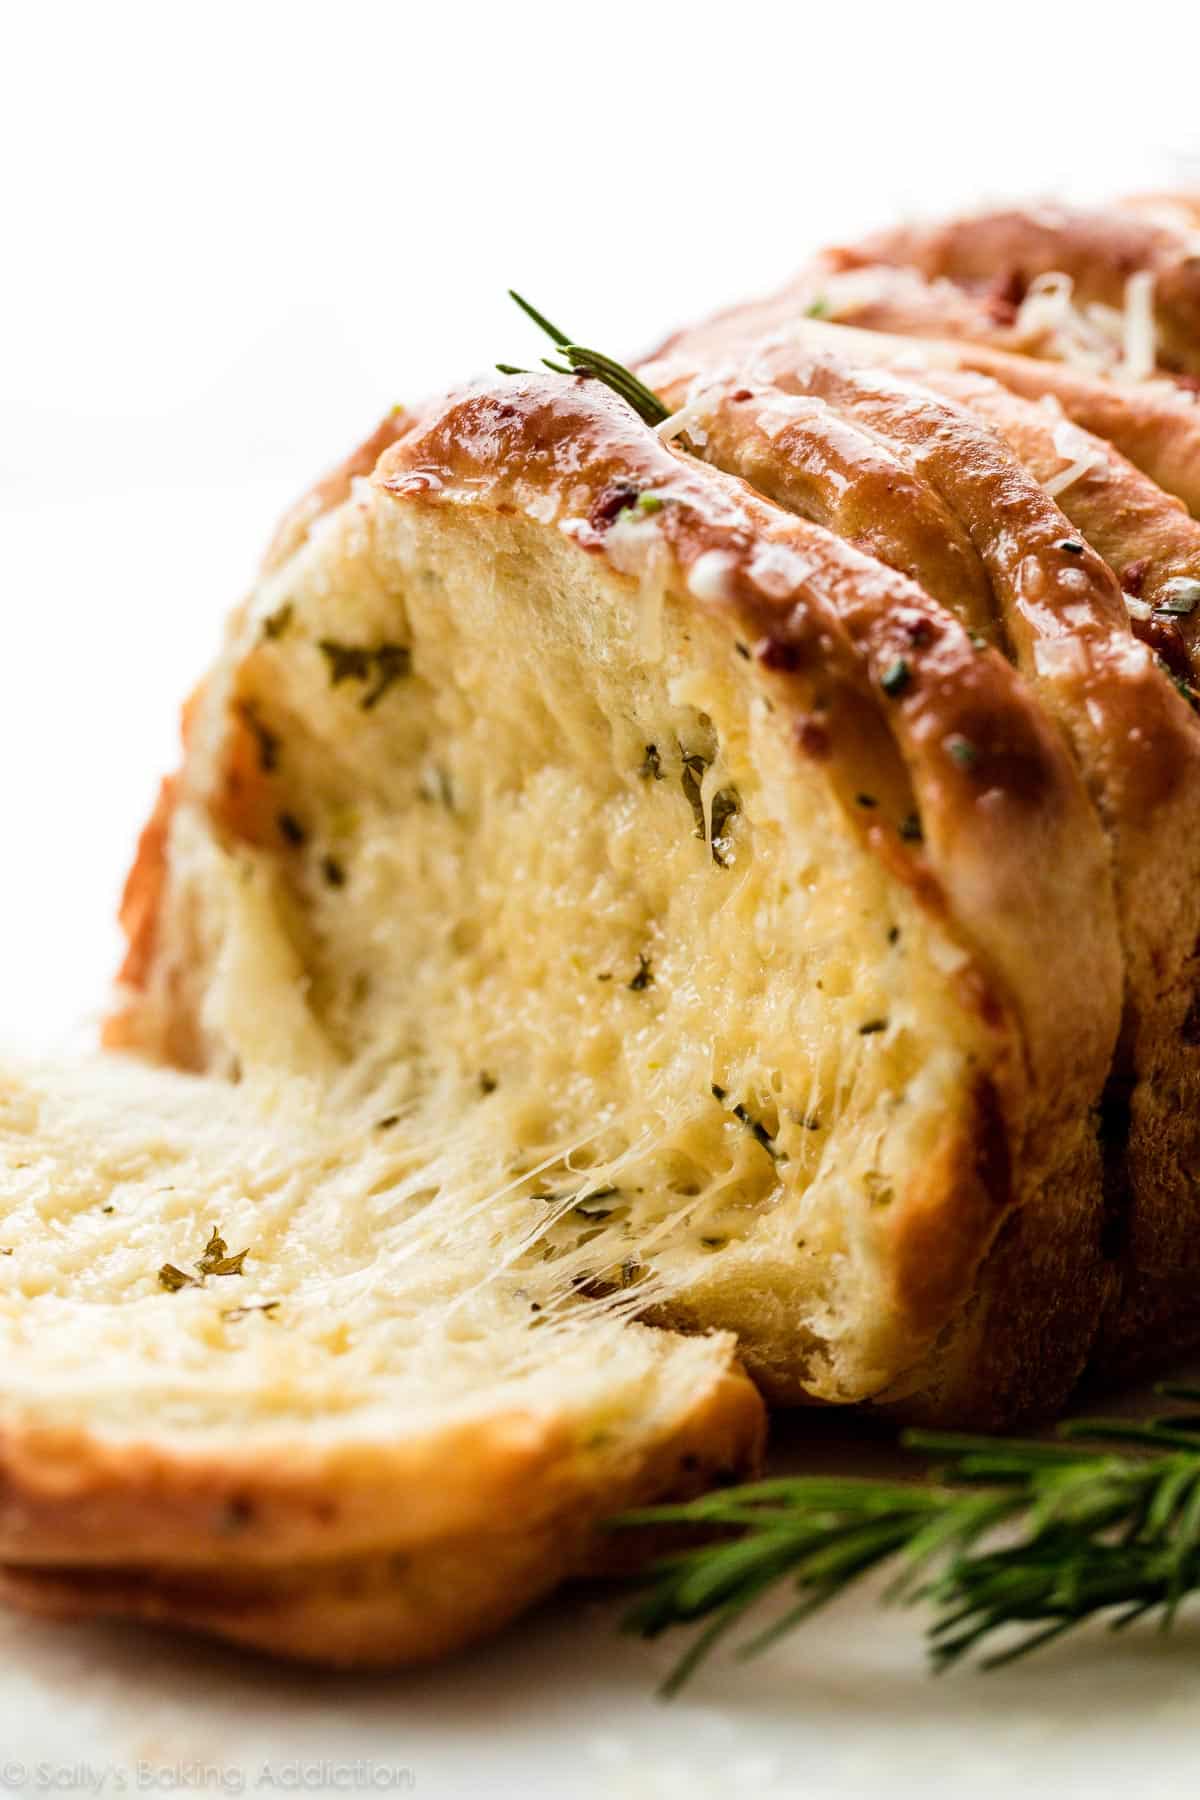 Rosemary Garlic Pull Apart Bread from https://sallysbakingaddiction.com/